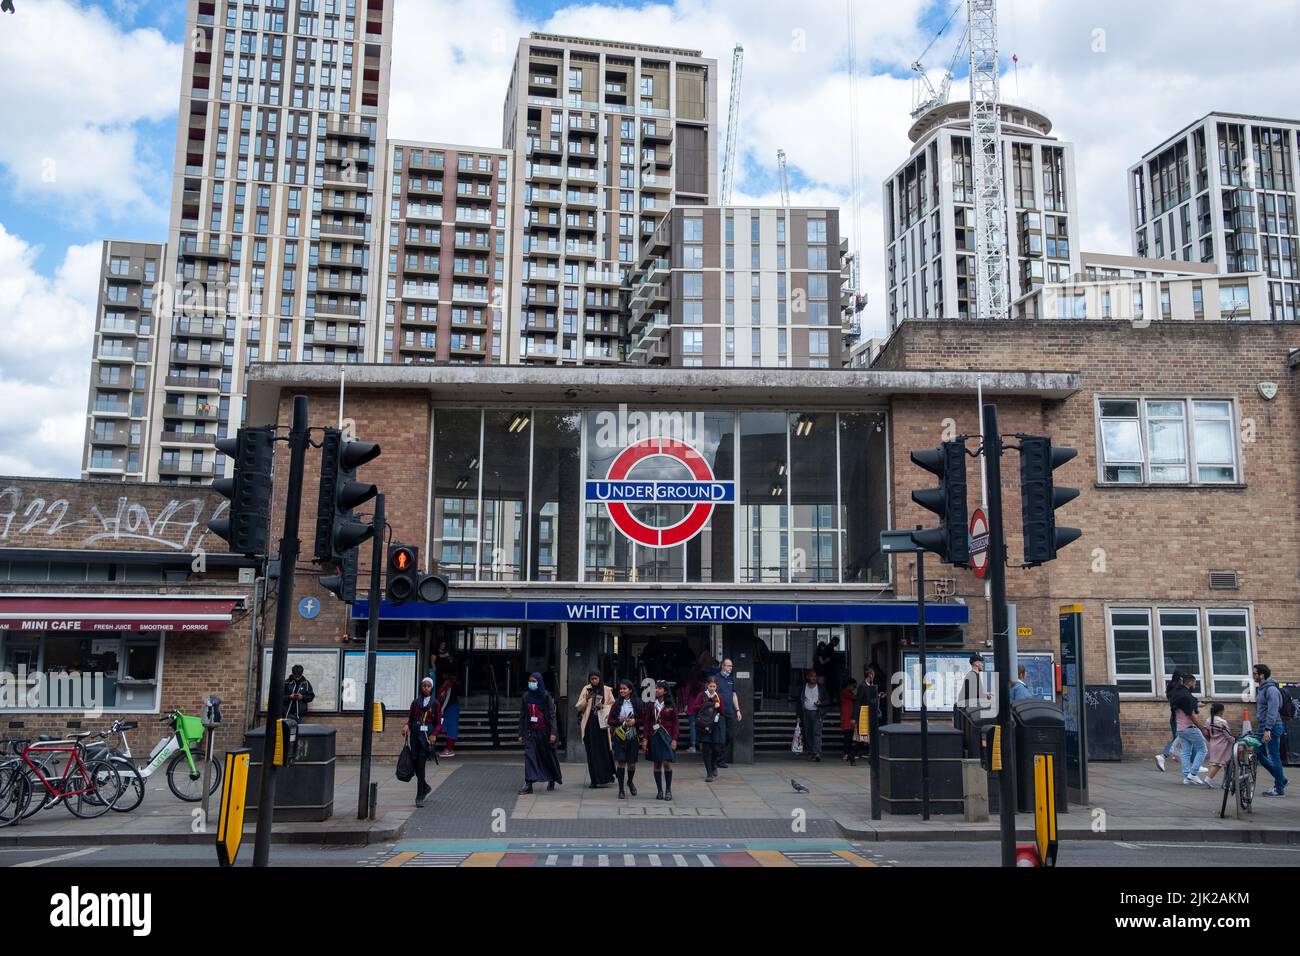 Londres, juillet 2022: White City Station avec de nouveaux bâtiments résidentiels. Une station de métro de Londres dans la région de Shepherd Bush à l'ouest de Londres Banque D'Images